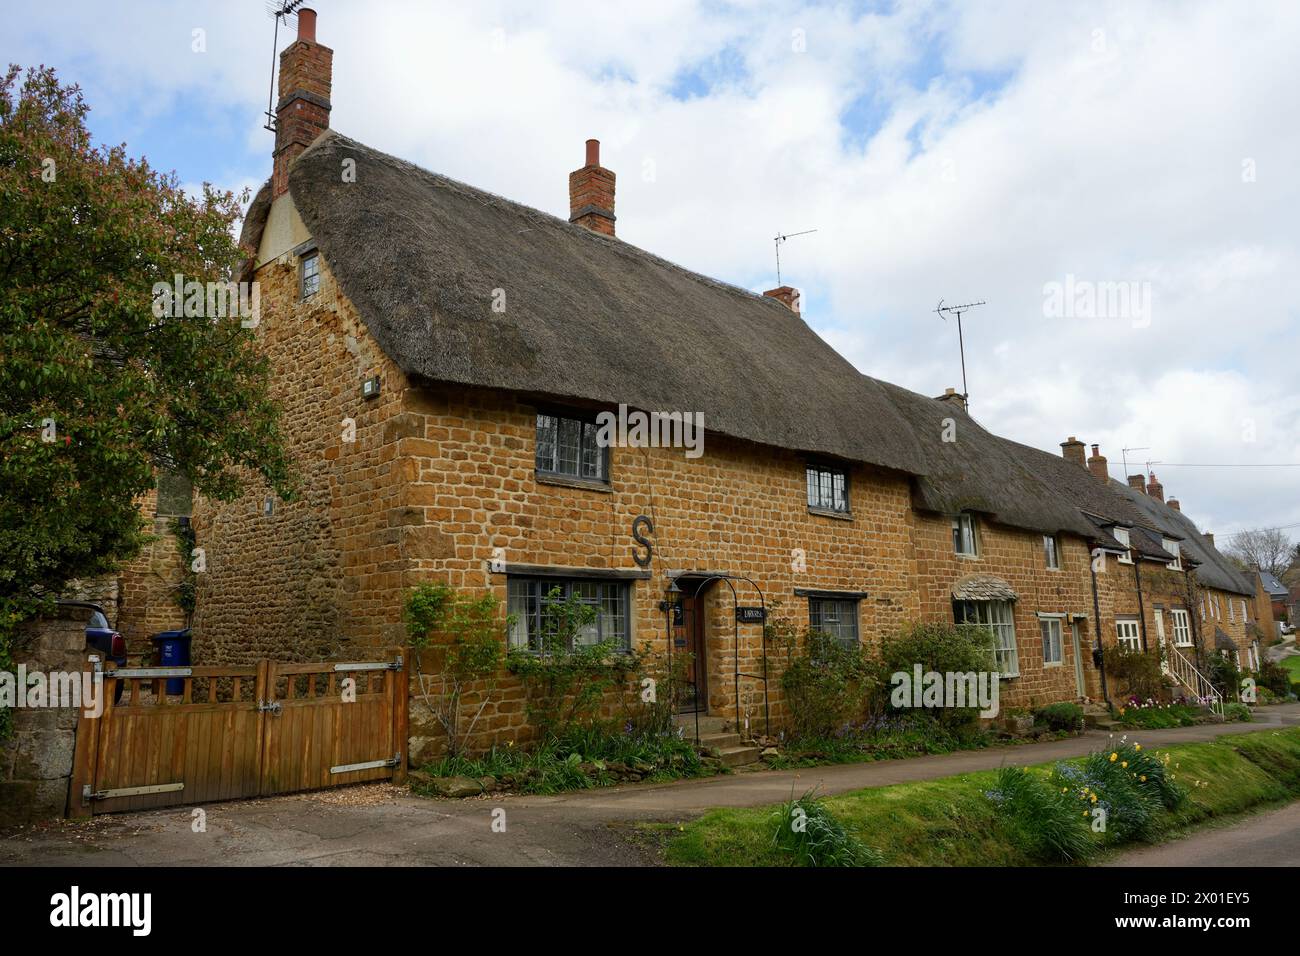 Splendidi cottage tradizionali con tetto in paglia in questo incantevole villaggio dell'Oxfordshire. Foto Stock